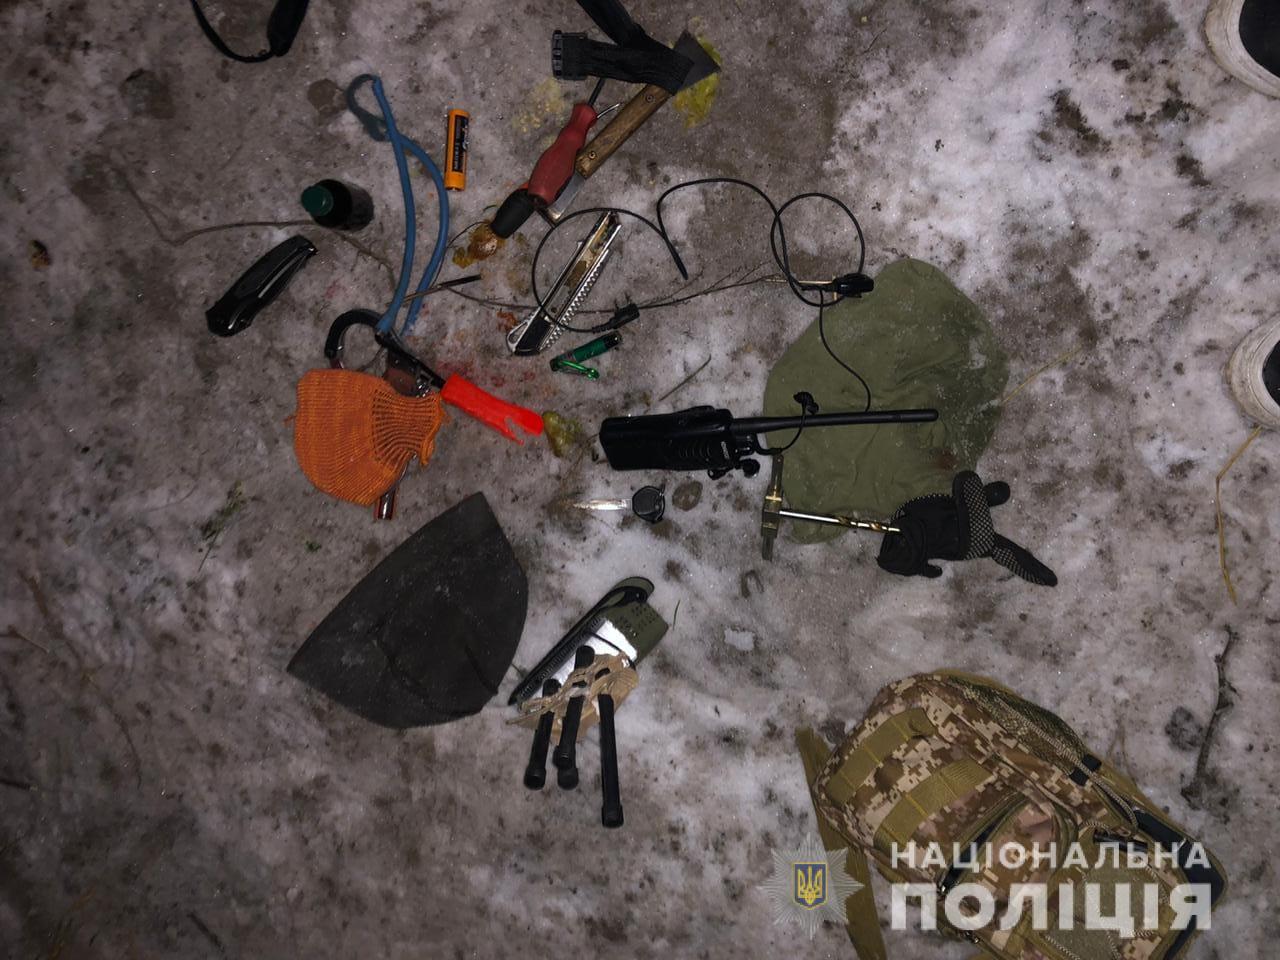 Под Киевом произошла перестрелка КОРДа с ОПГ: в спецназ бросили гранату – видео